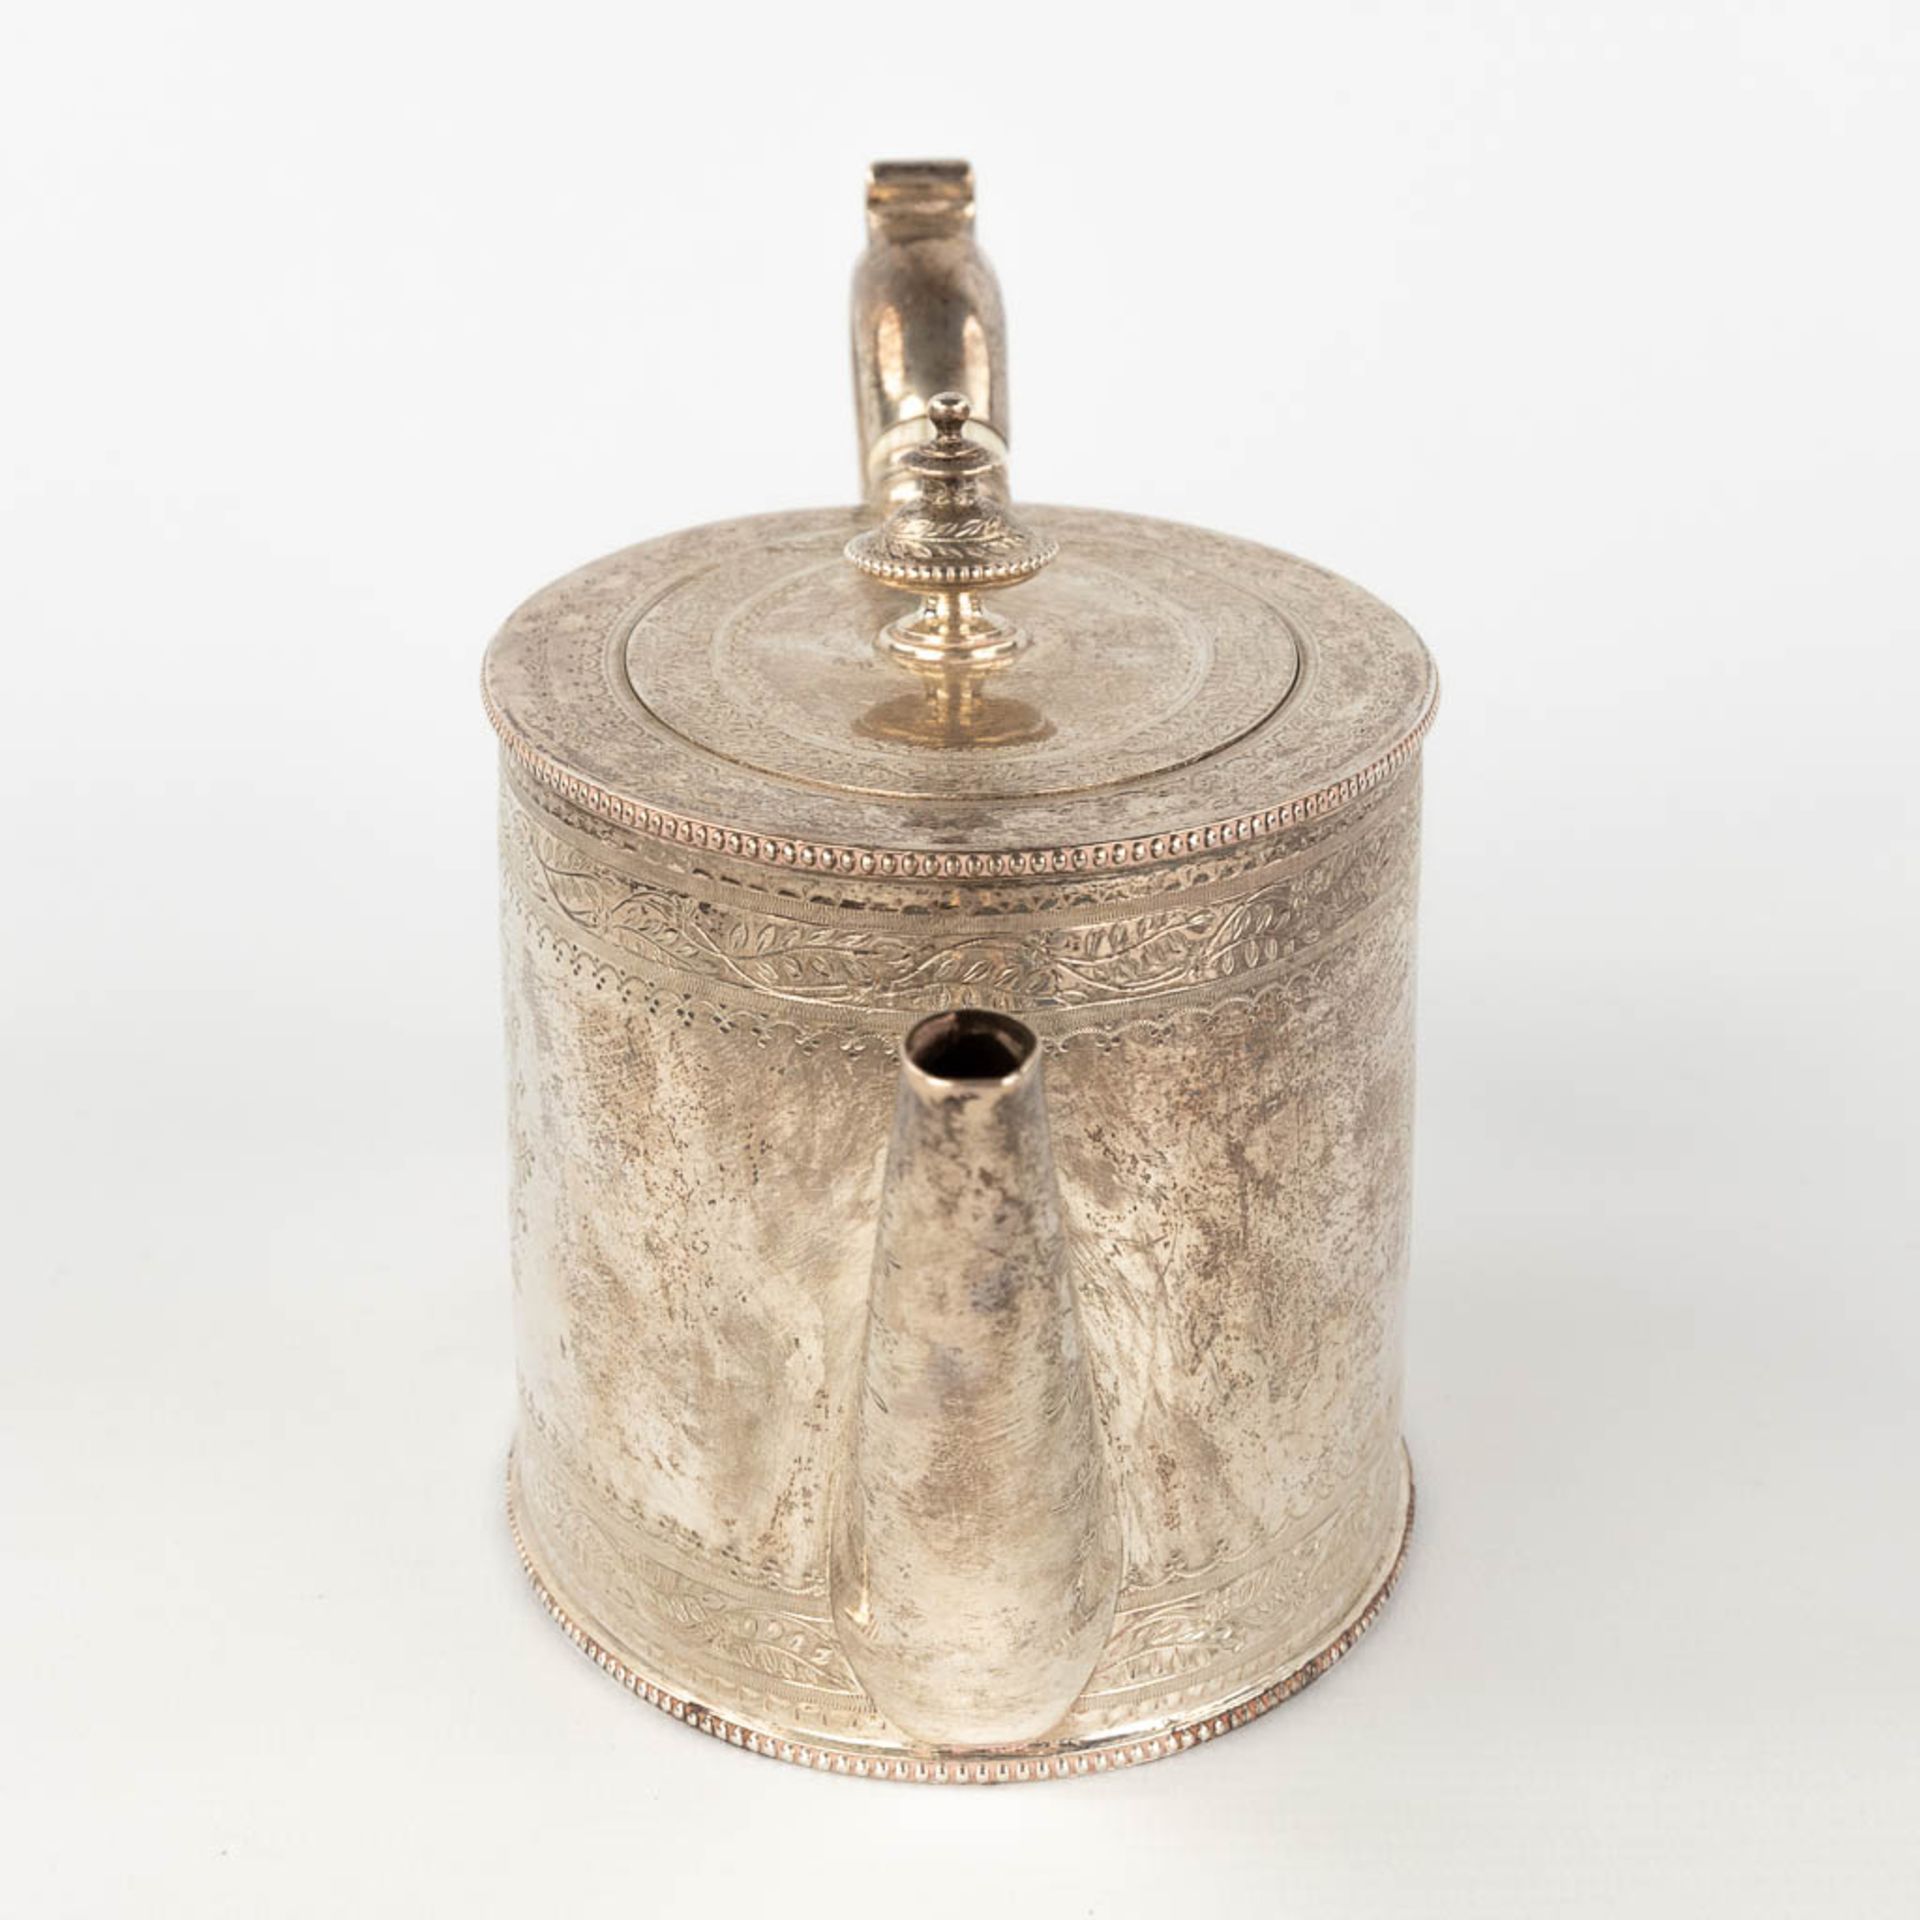 An antique tea pot, silver, London, 19th century. 520g. (L: 10 x W: 26 x H: 13 cm) - Image 5 of 14